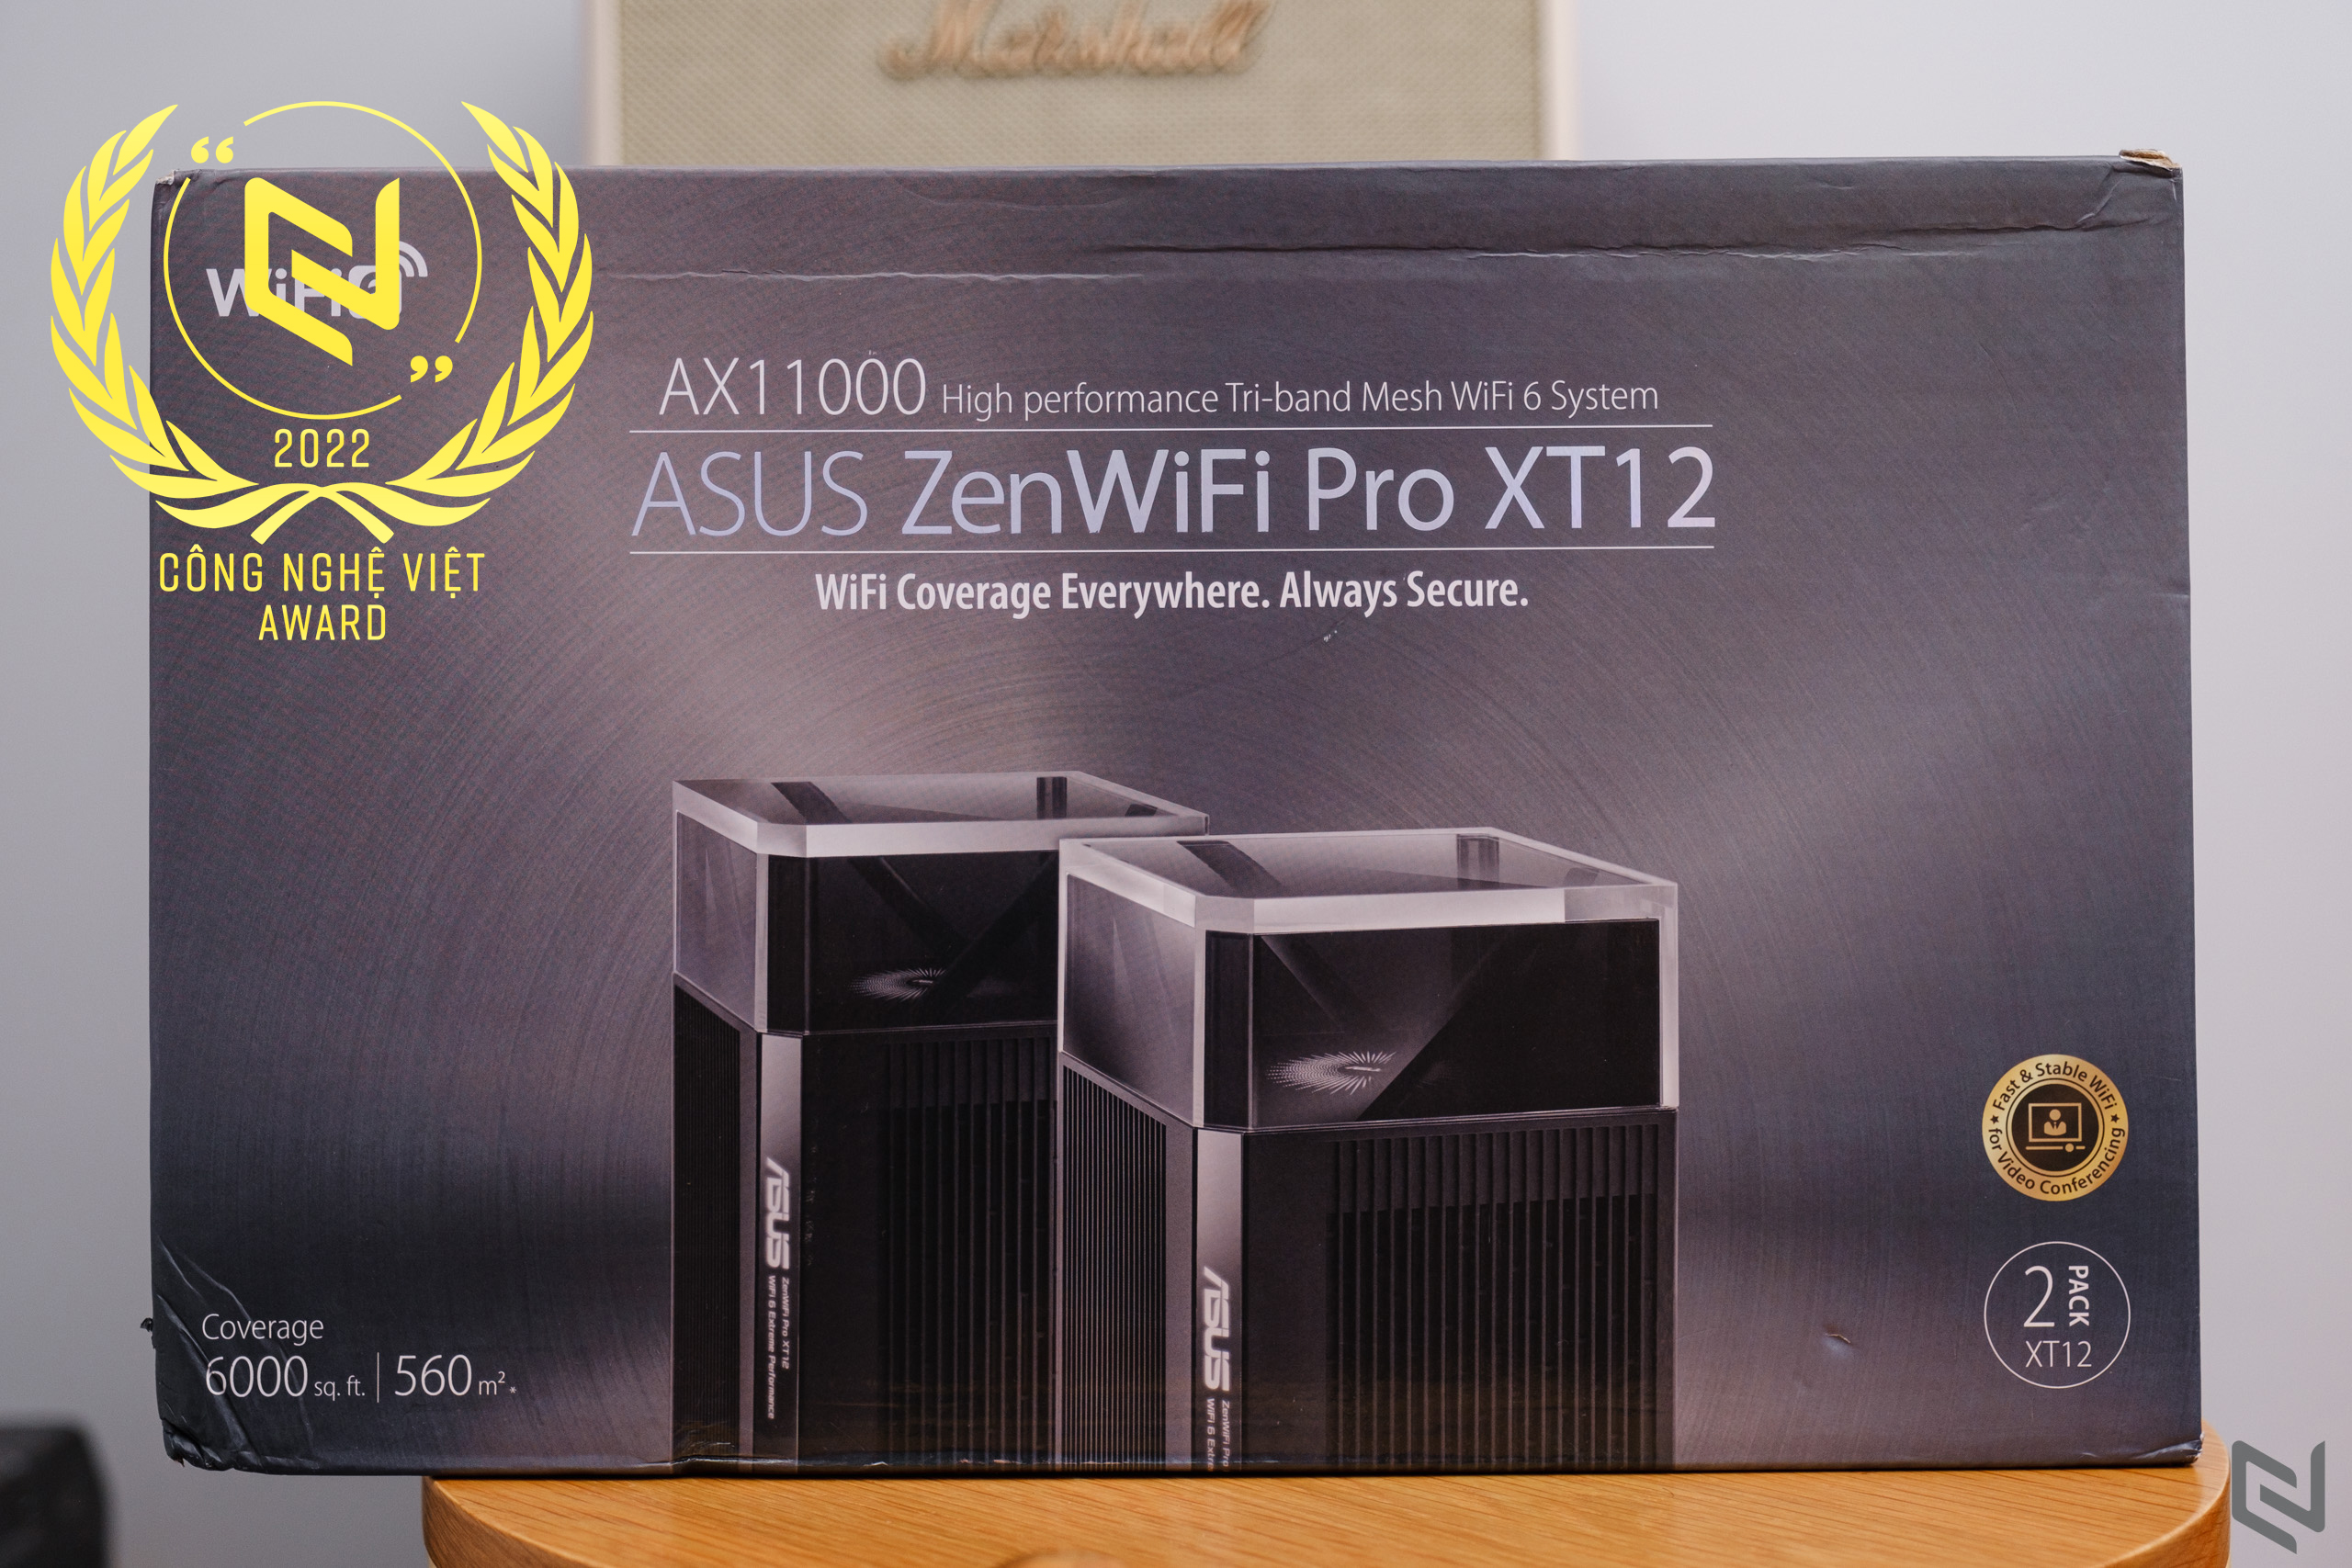 Trên tay router ASUS ZenWiFi Pro XT12: Mesh WiFi 6 với 3 băng tần và phạm vi phủ sóng xa, trang bị loạt tính năng cao cấp và hiệu năng mạnh mẽ